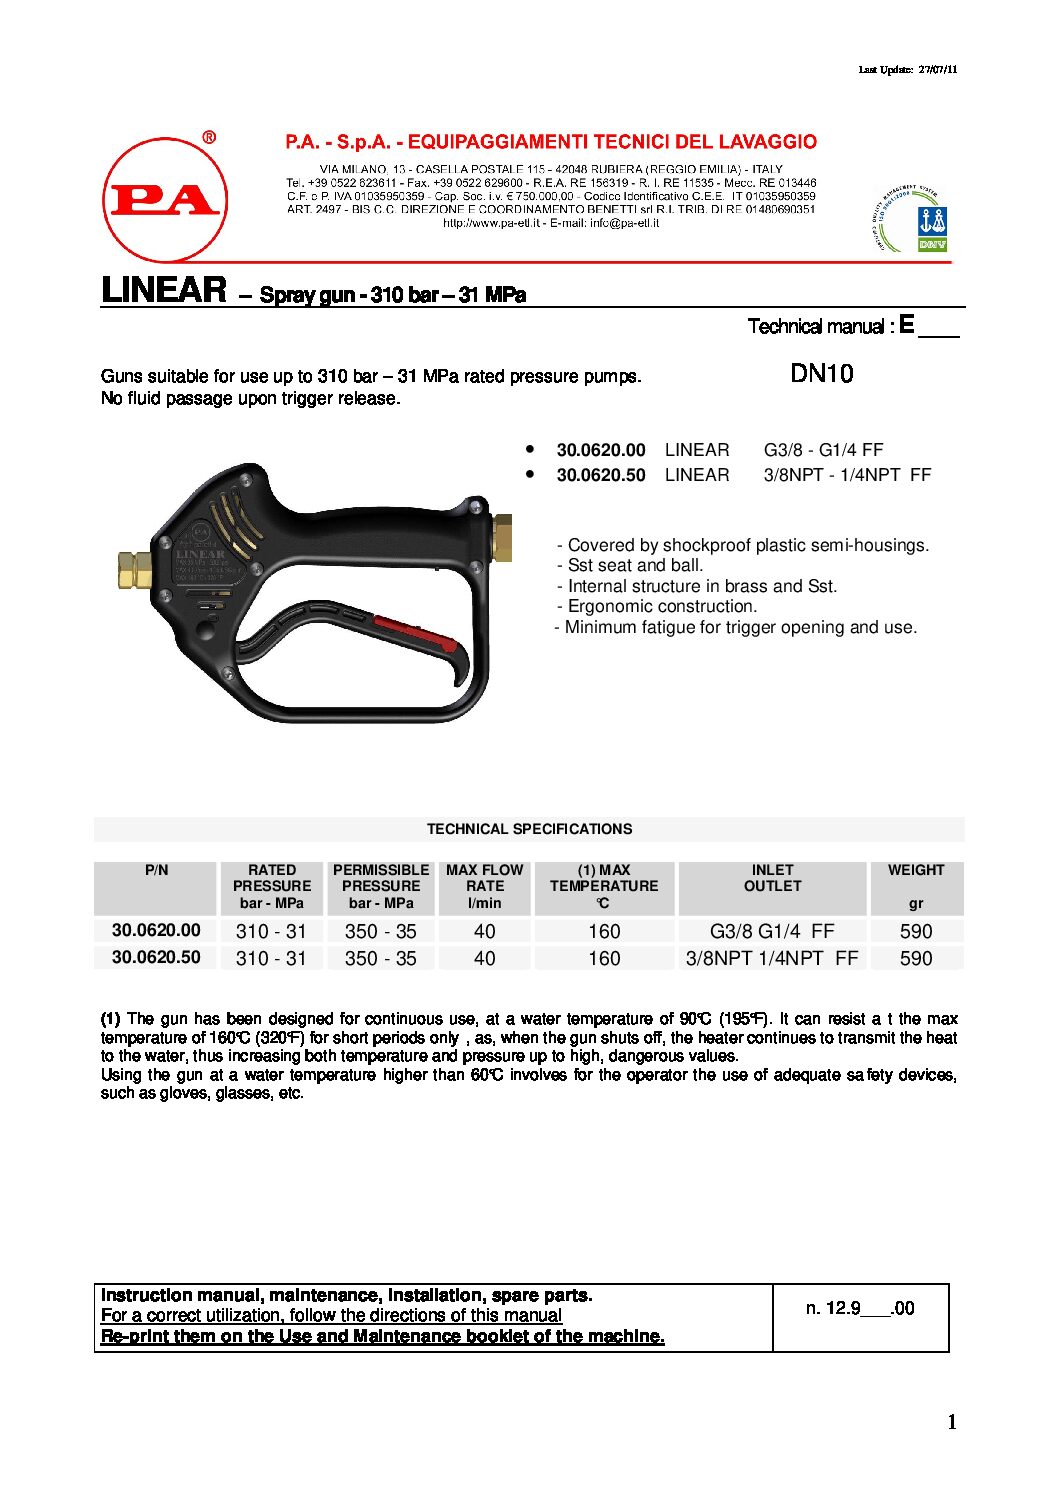 PA G85LN Linear Gun technical information